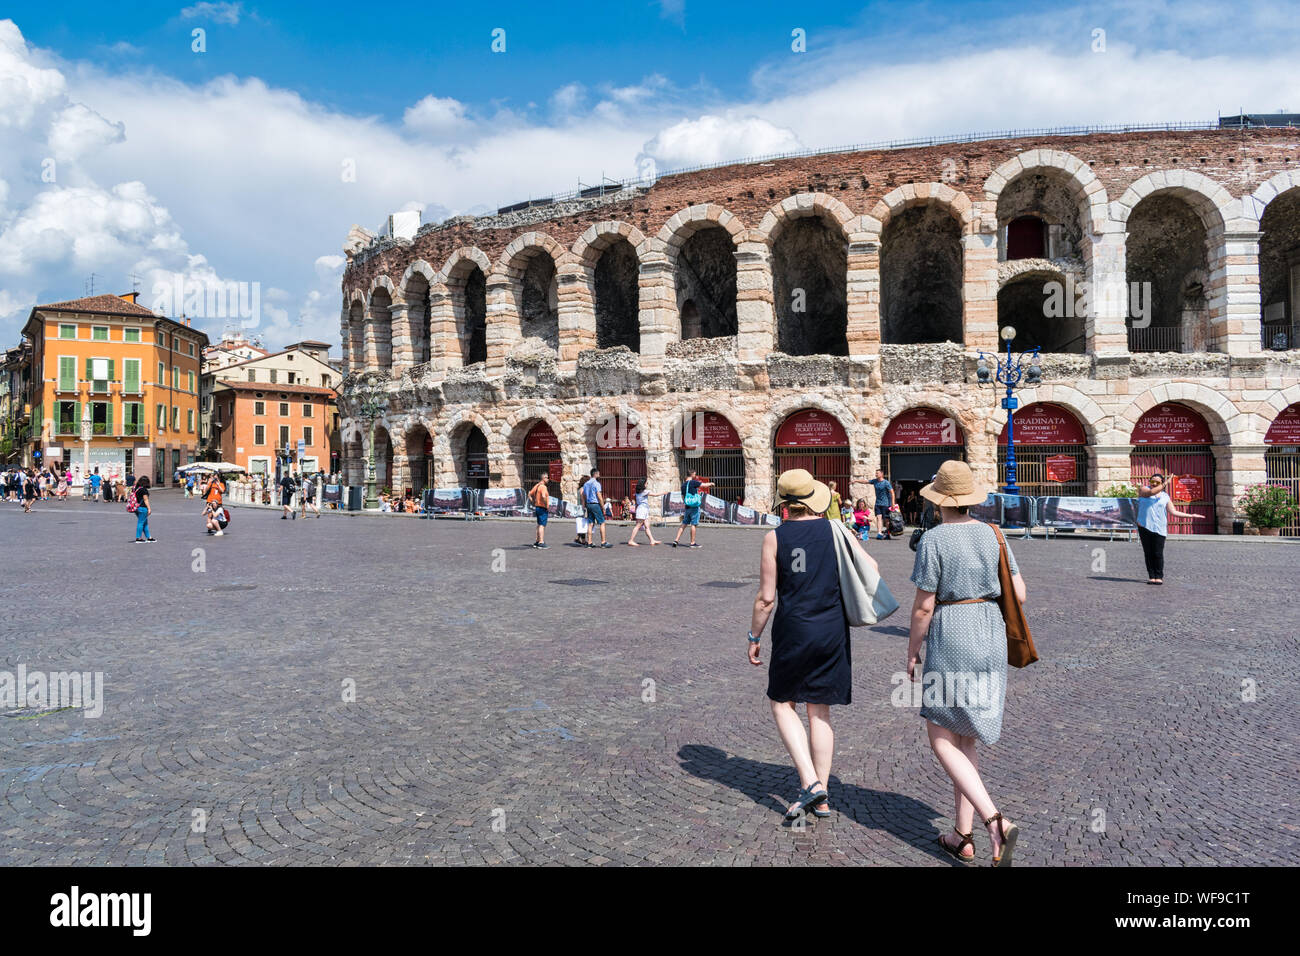 Vérone, Italie - 27 juillet 2019 : les touristes en dehors de l'ancienne arène romaine dans la ville de Verona Banque D'Images